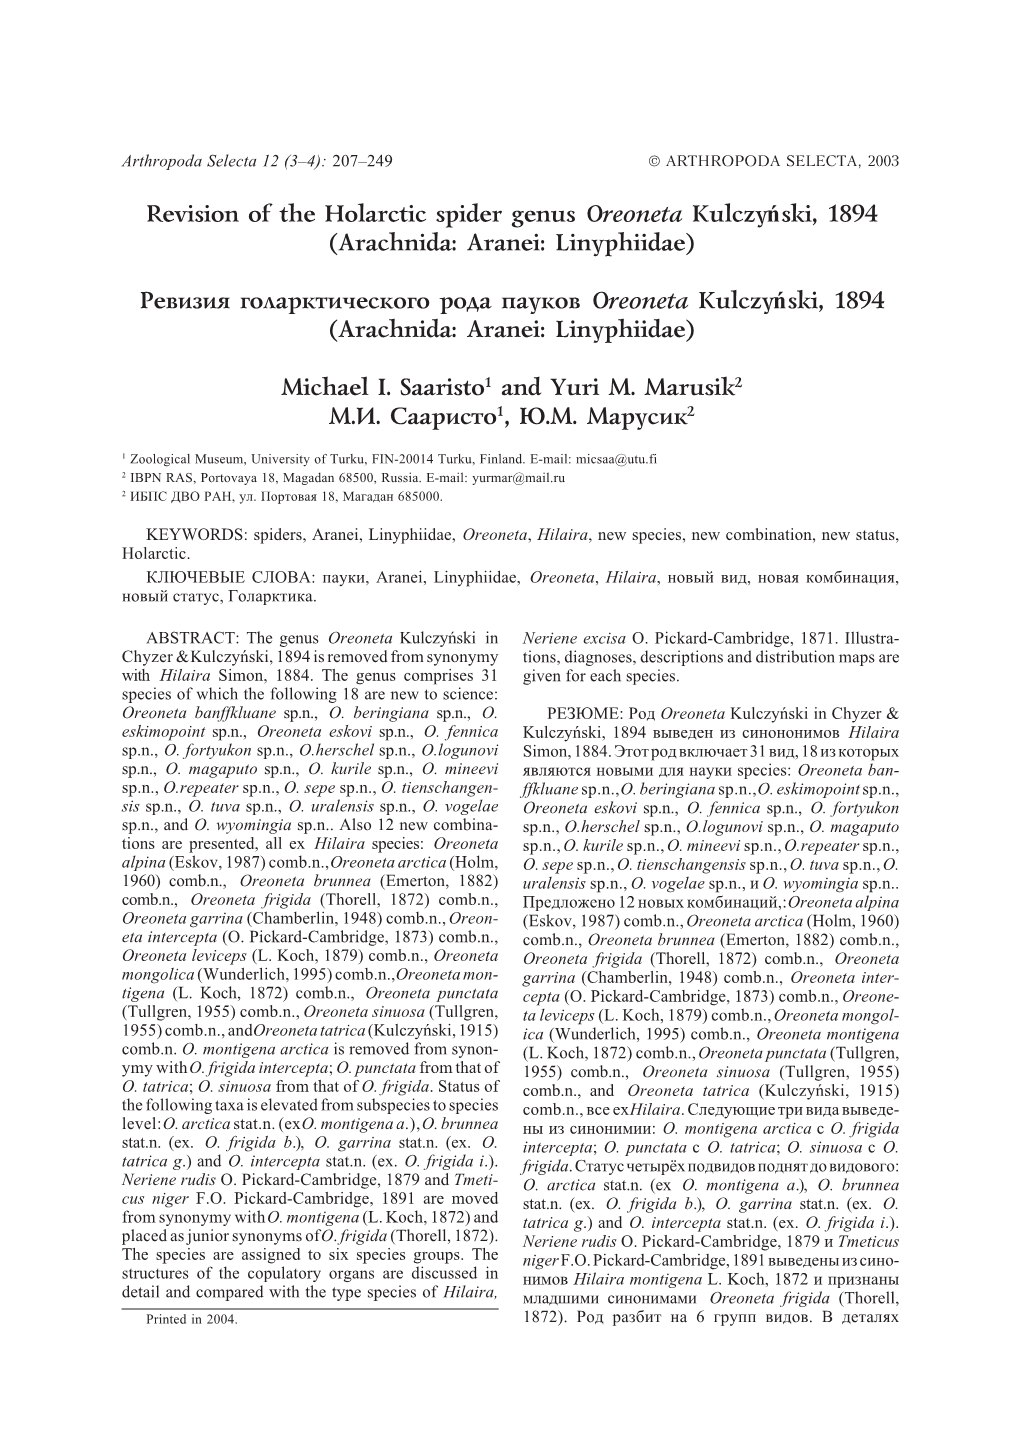 Revision of the Holarctic Spider Genus Oreoneta Kulczyński, 1894